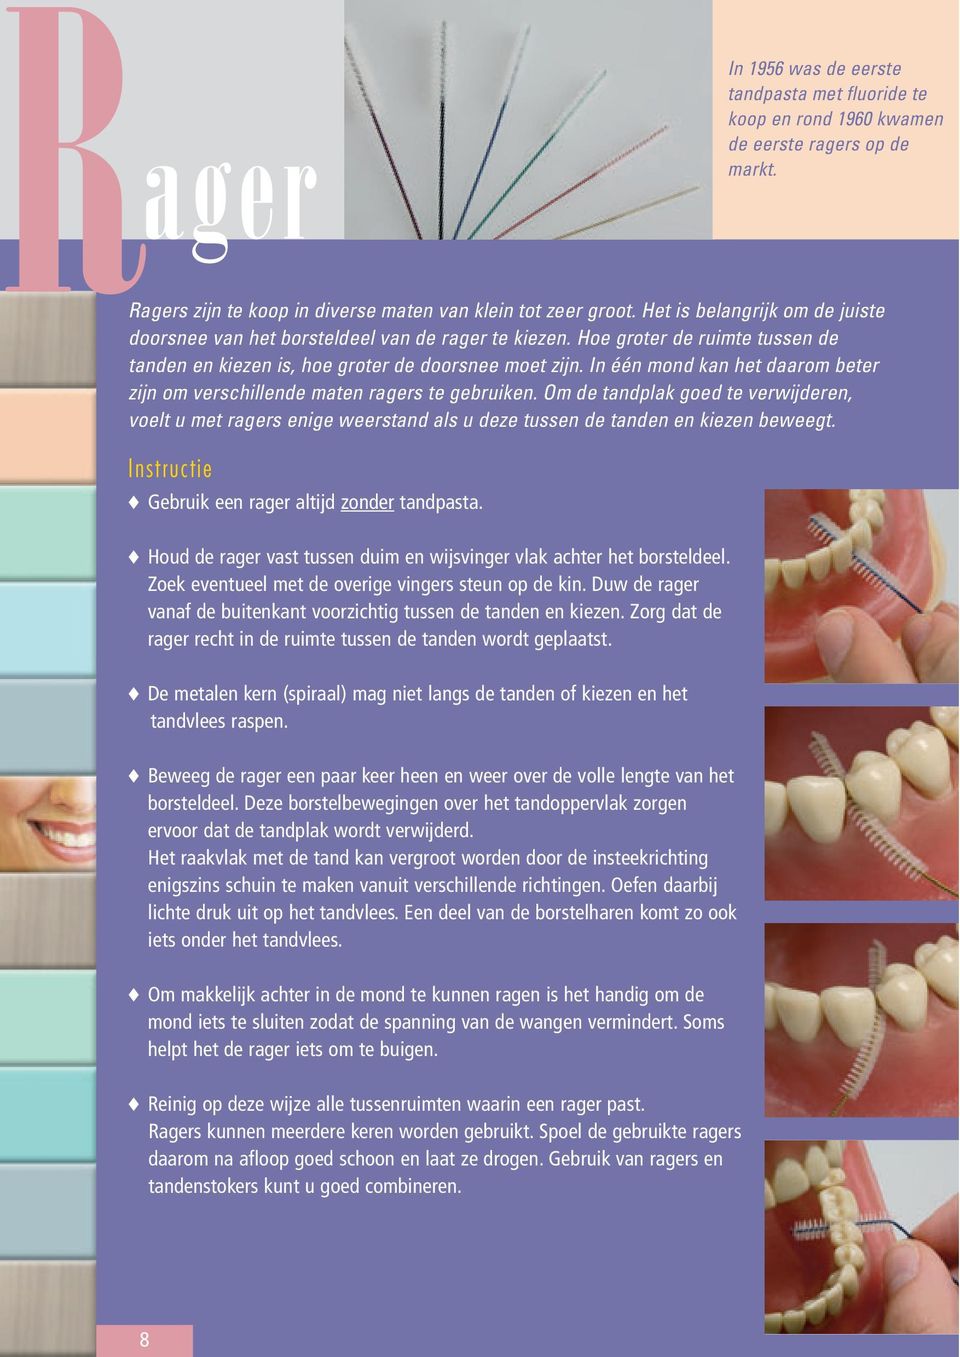 Om de tandplak goed te verwijderen, voelt u met ragers enige weerstand als u deze tussen de tanden en kiezen beweegt. Gebruik een rager altijd zonder tandpasta.